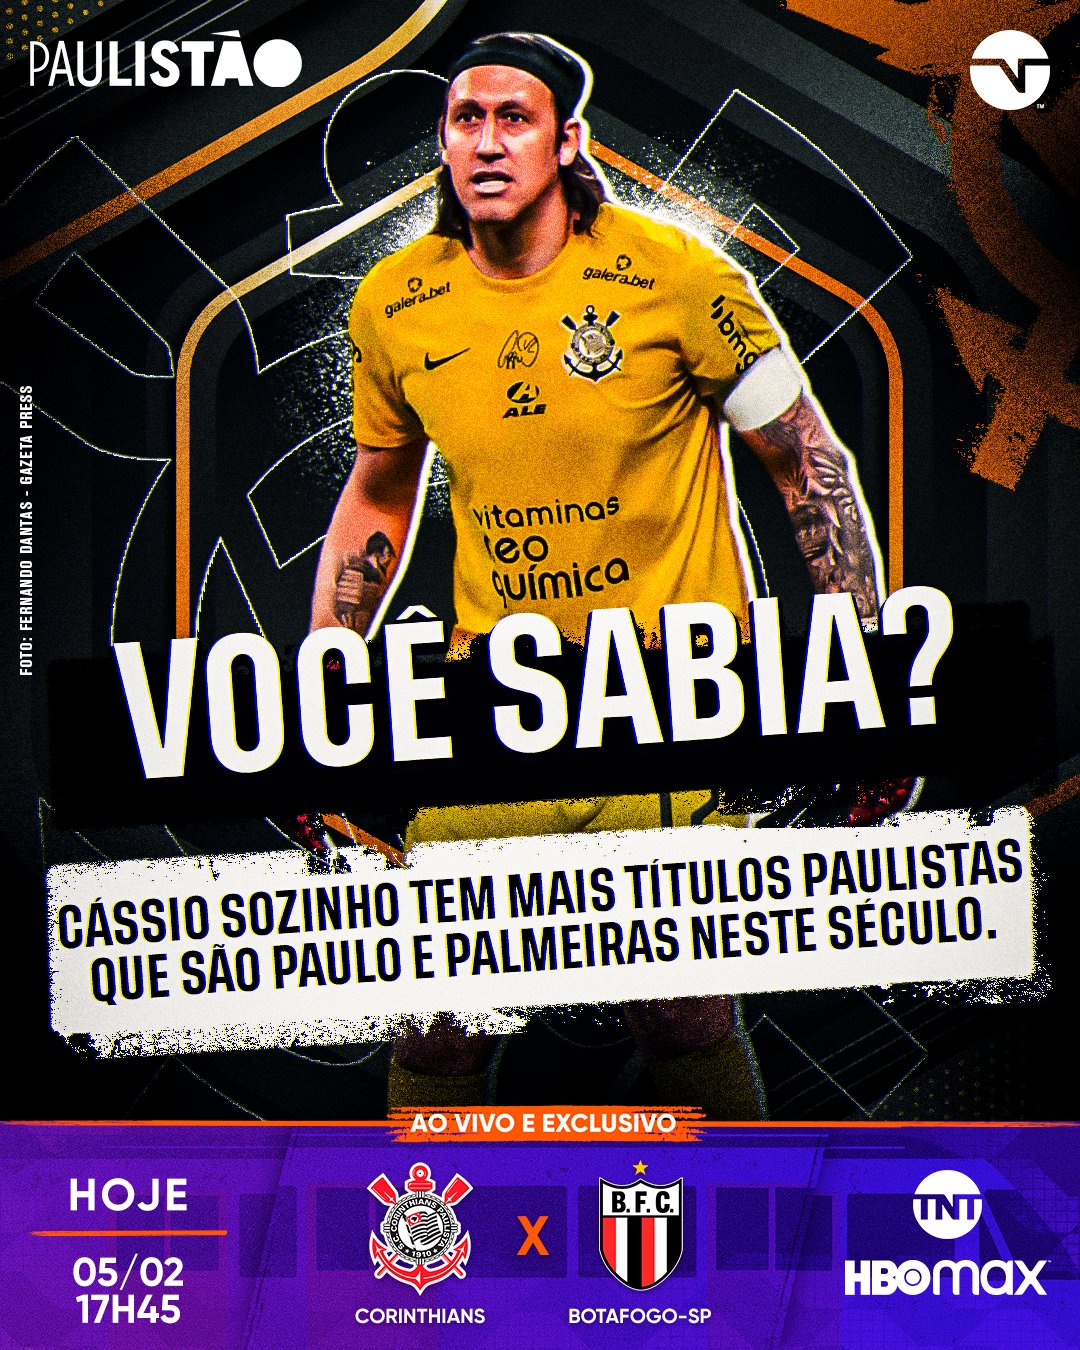 TNT Sports BR on X: 2️⃣9️⃣ PÊNALTIS DEFENDIDOS! ❌🧤 O Cássio fica GIGANTE  na frente dos batedores! #CopaDoBrasil2023  / X